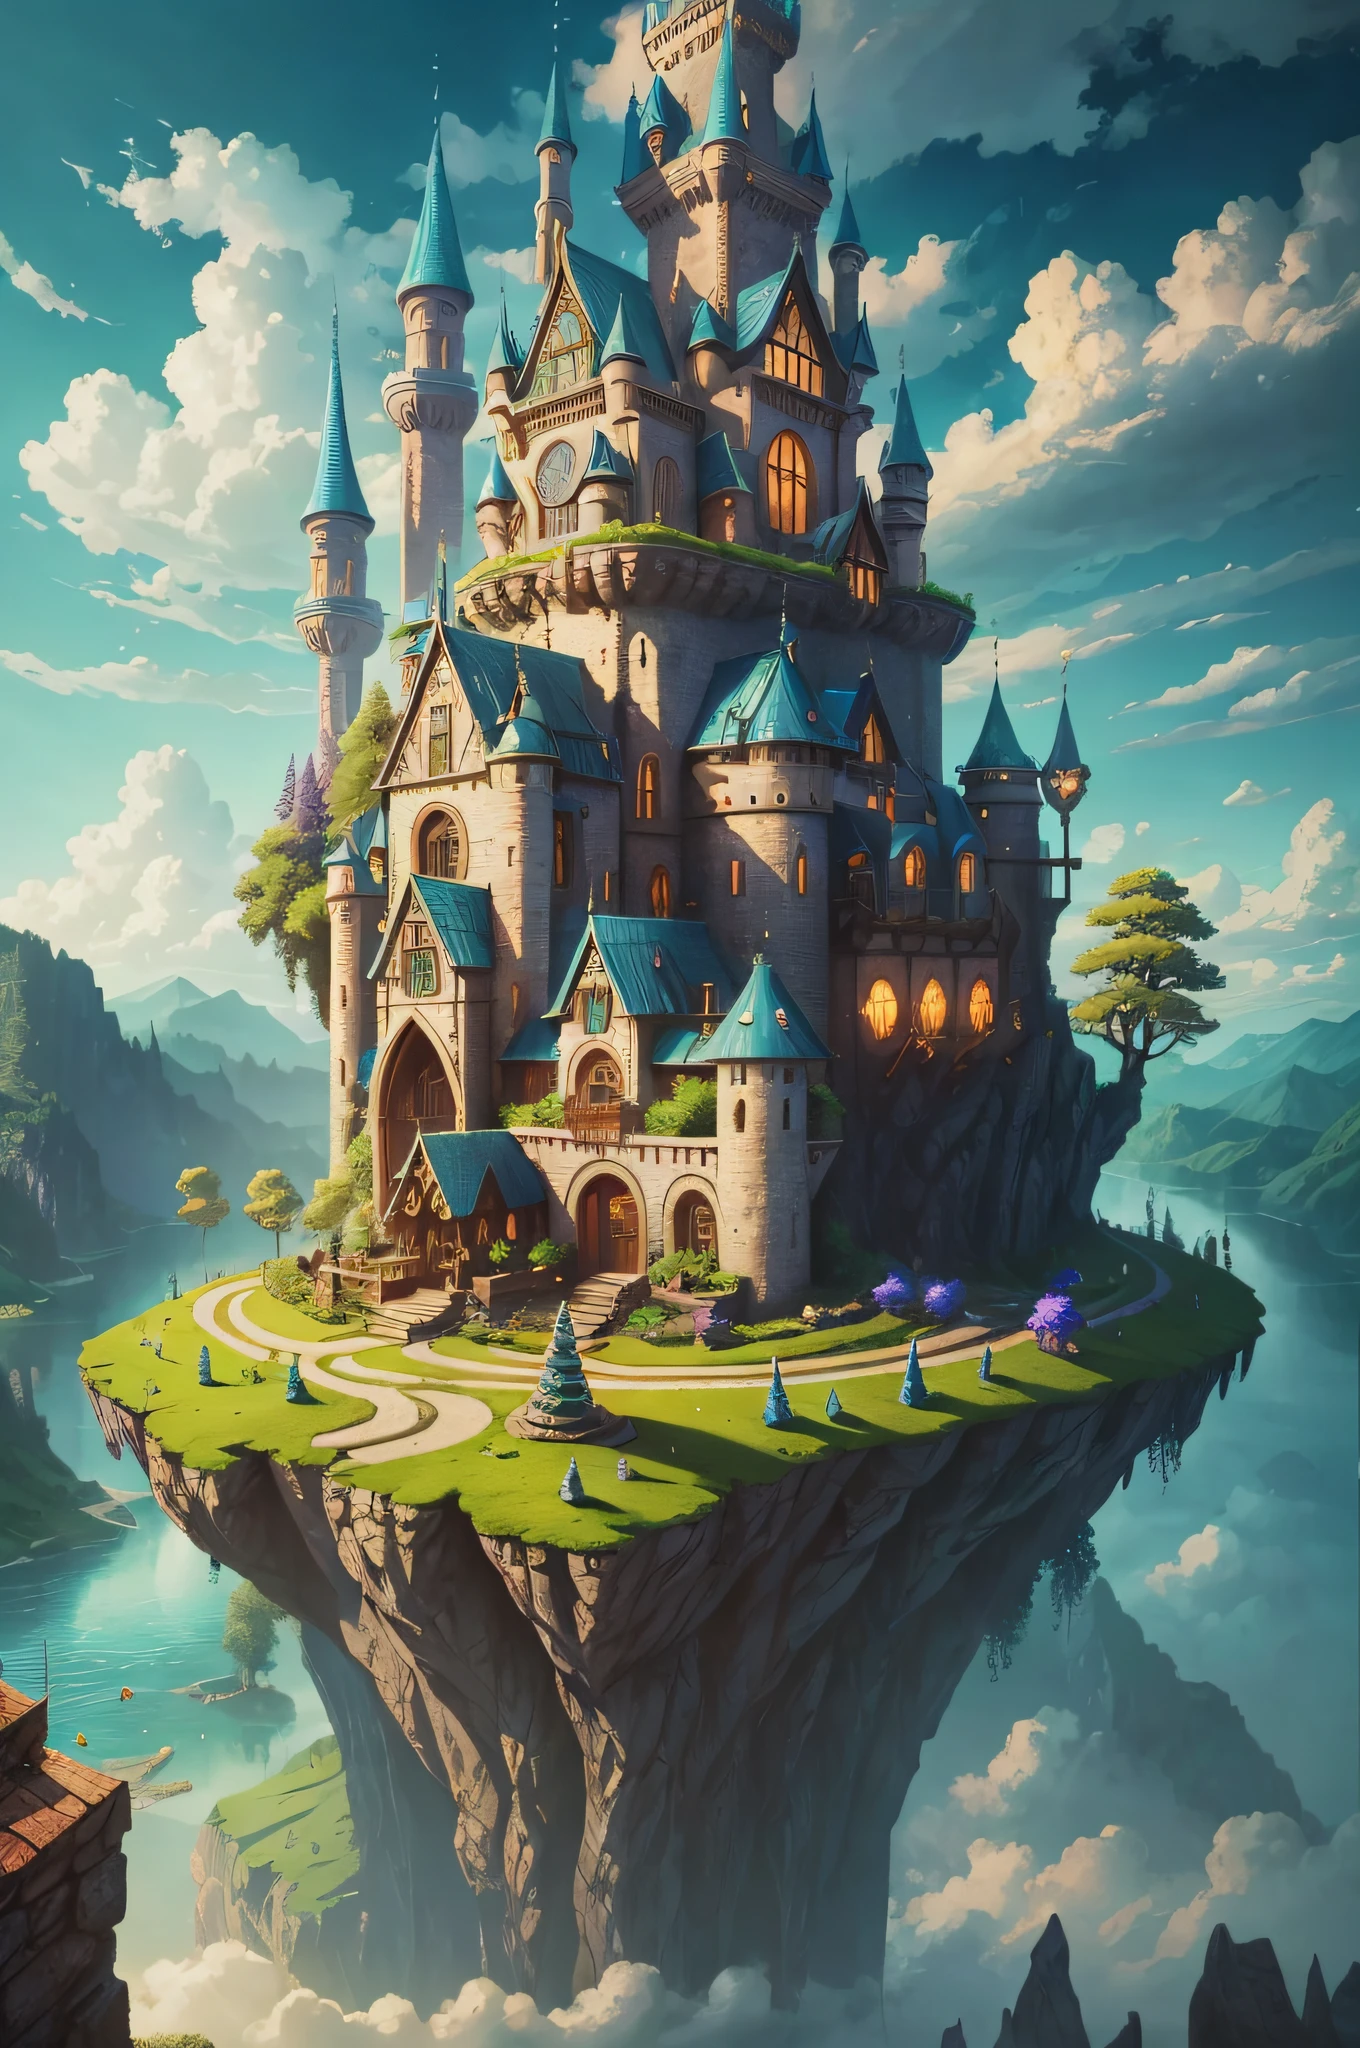 Elfenkönigreich, Haus voller Design, Wald, See, Himmel, Wolken, fantastisch, übersättigt, surreal, Pixar-Stil, hohe Auflösung, artgerm, Meisterwerk, Super detailliert, Epische Komposition, gute Qualität, höchste Qualität , 4k --v 6